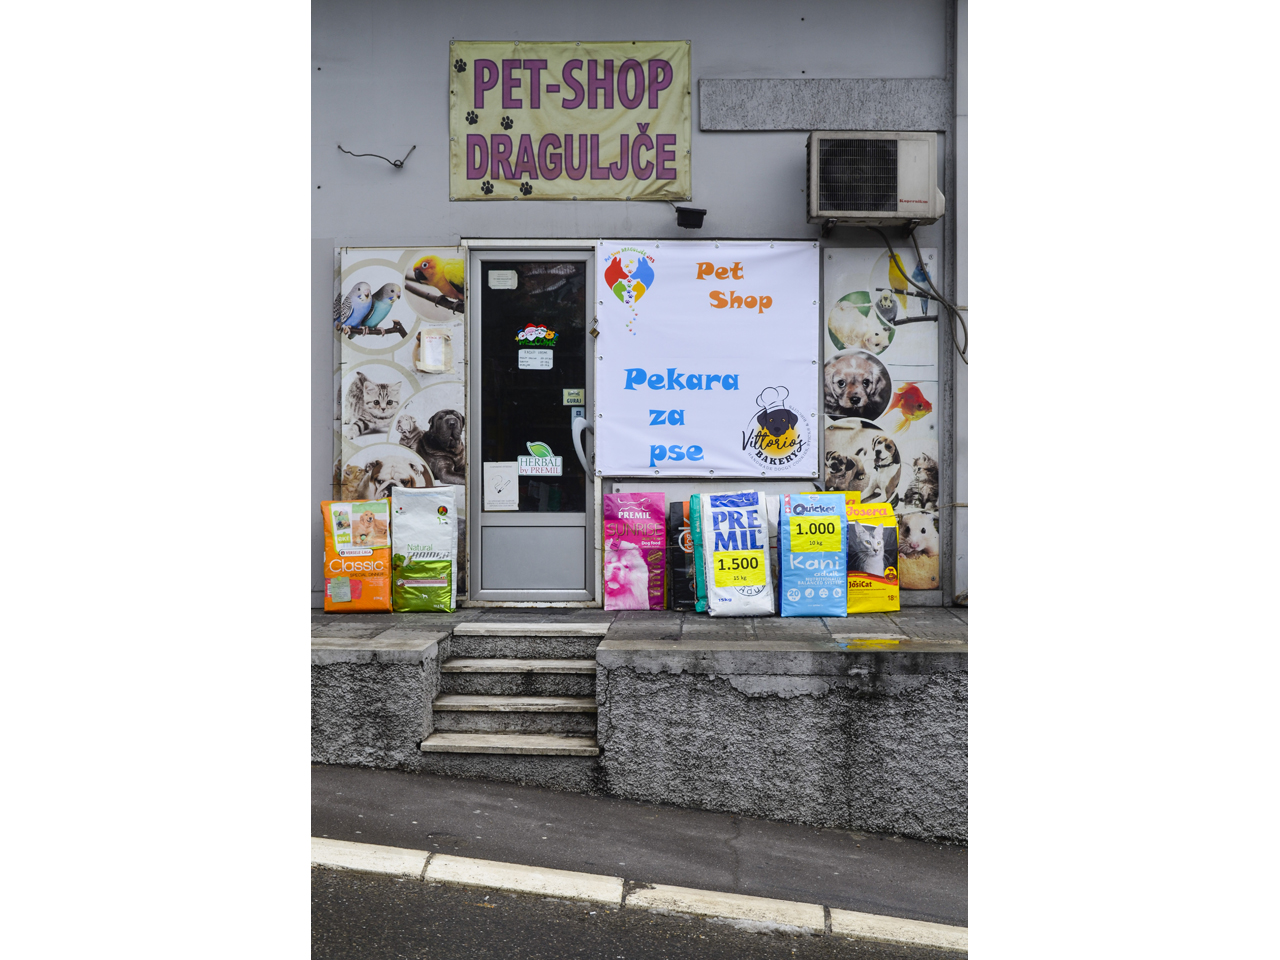 DRAGULJCE PET SHOP AND BAKERY FOR DOGS JMS Pets, pet shop Belgrade - Photo 1